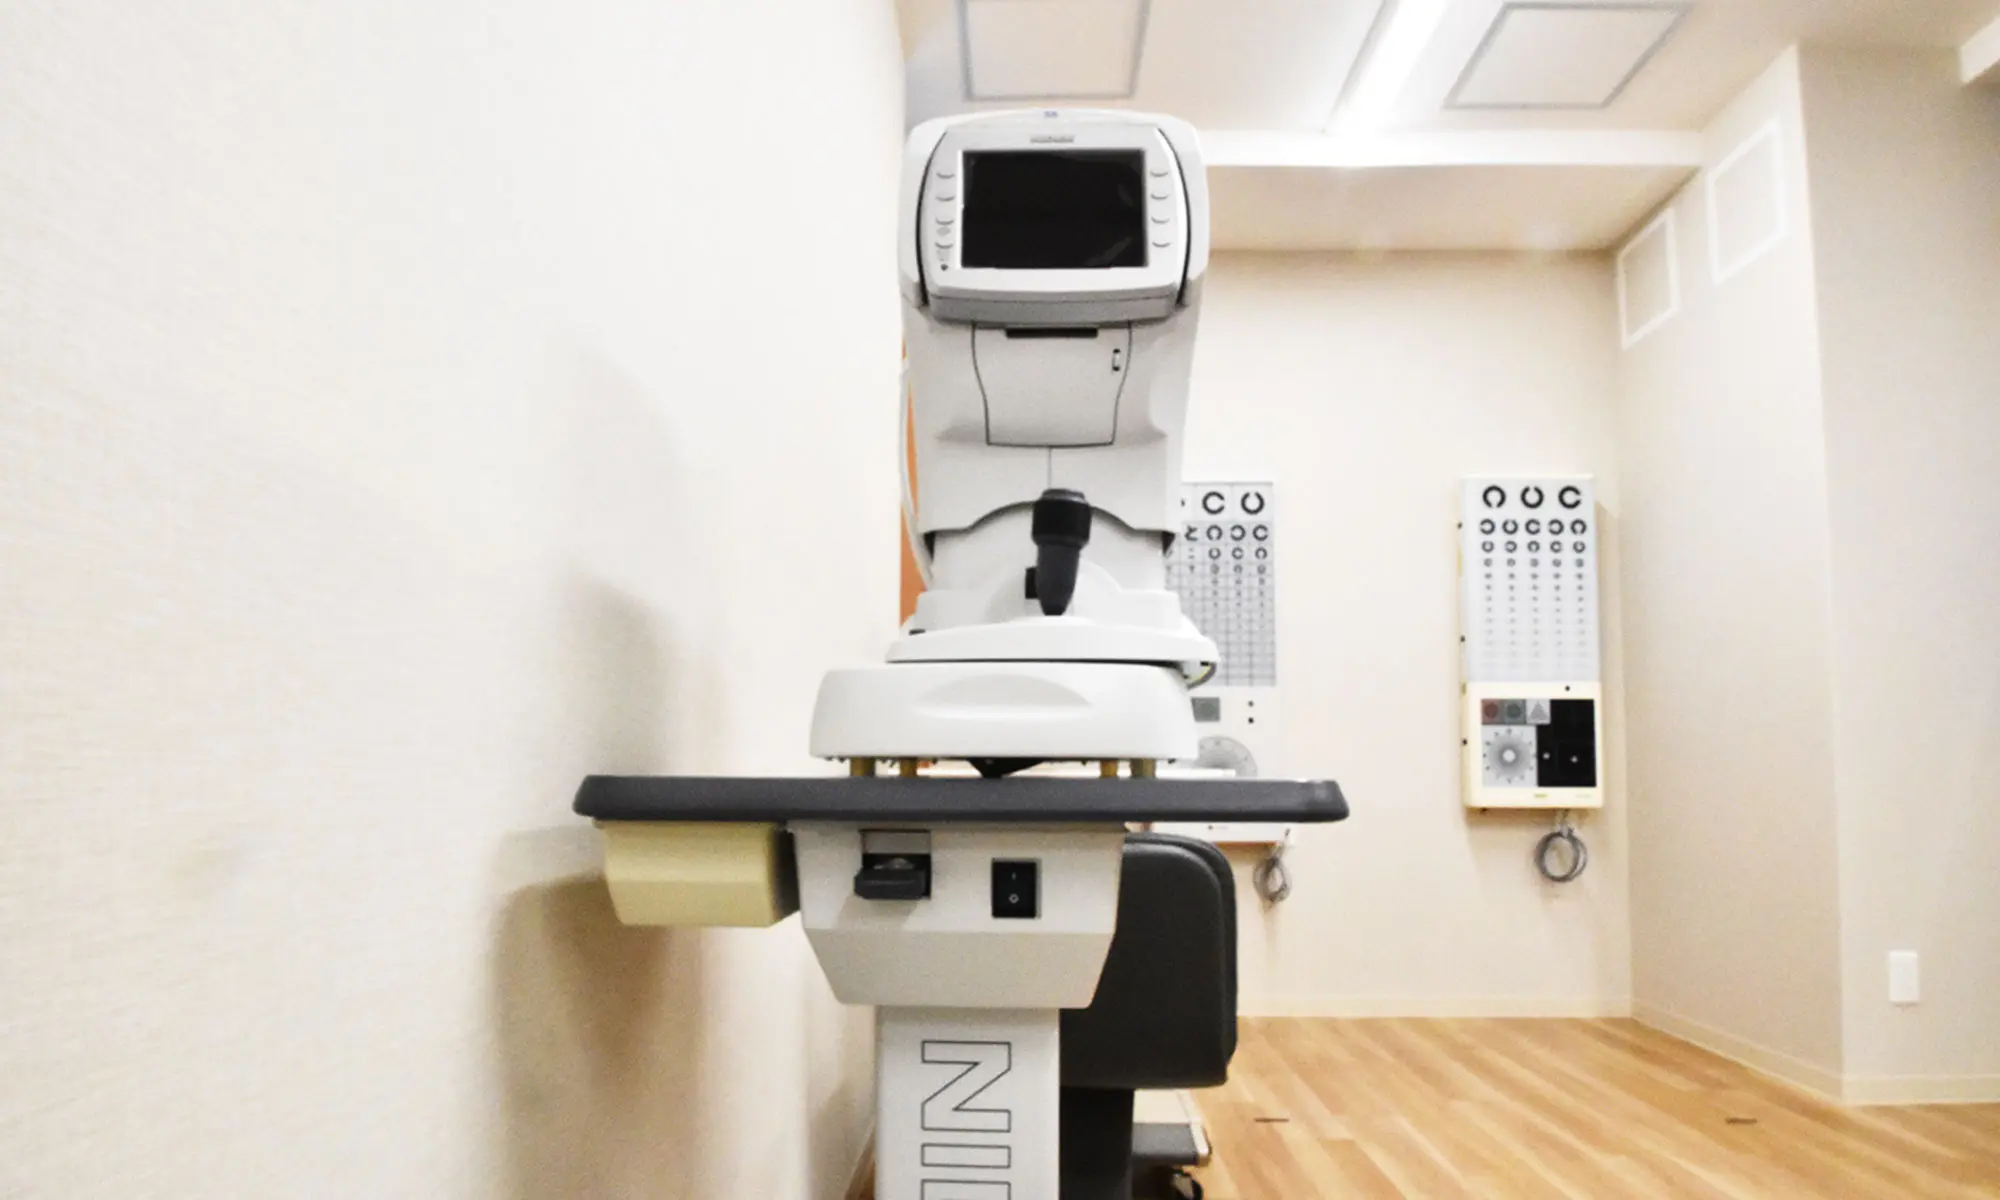 鈴木眼科クリニックは南北線 南平岸駅から徒歩5分に位置しています。白内障、緑内障。ドライアイ、遠視・近視、コンタクトレンズ検査など平岸におけるかかりつけ医として幅広く診療しています。